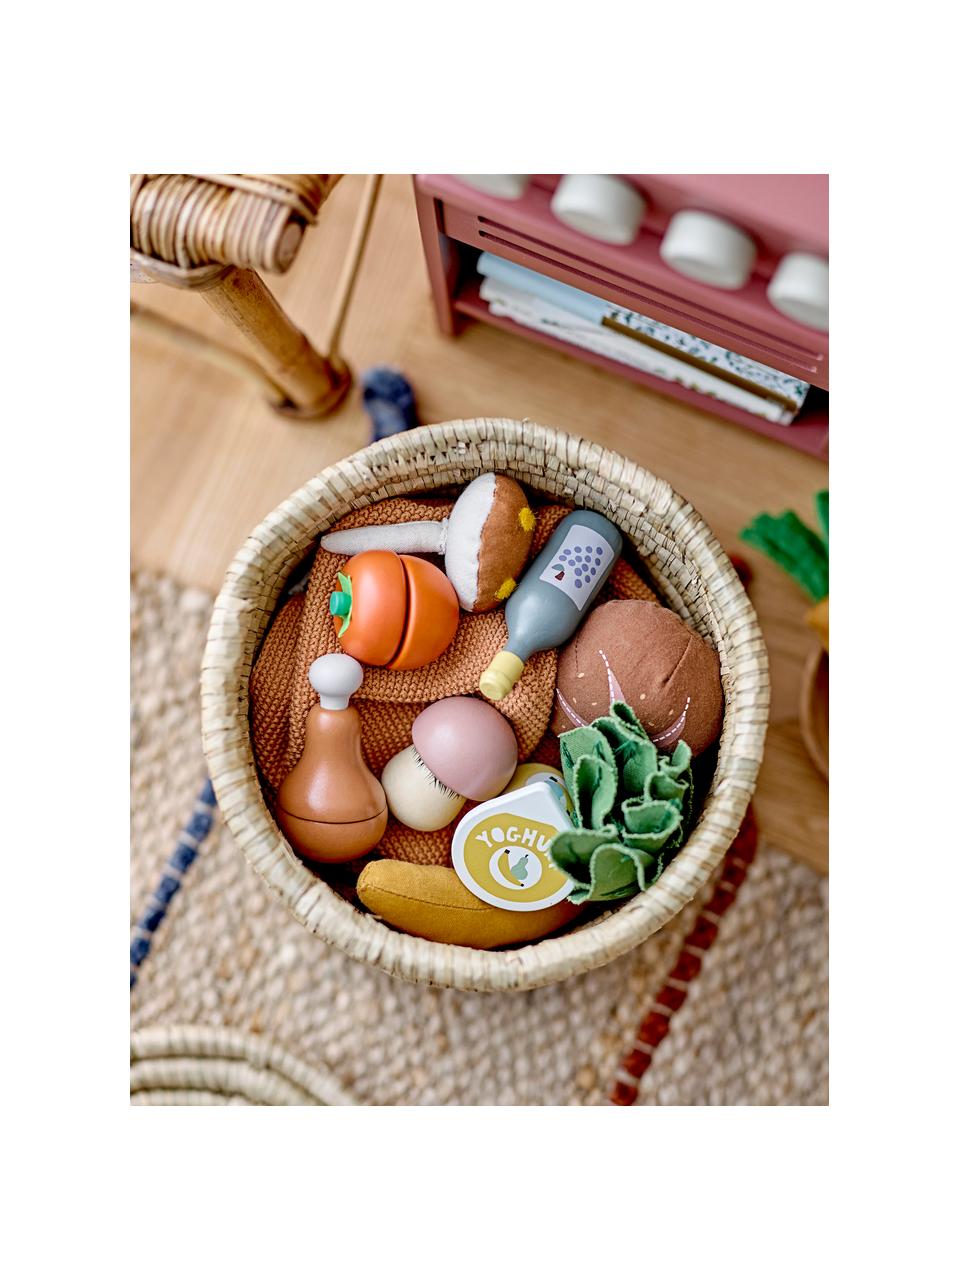 Sada hraček Food, Lotosové dřevo, MDF deska (dřevovláknitá deska střední hustoty), Více barev, Š 6 cm, V 10 cm